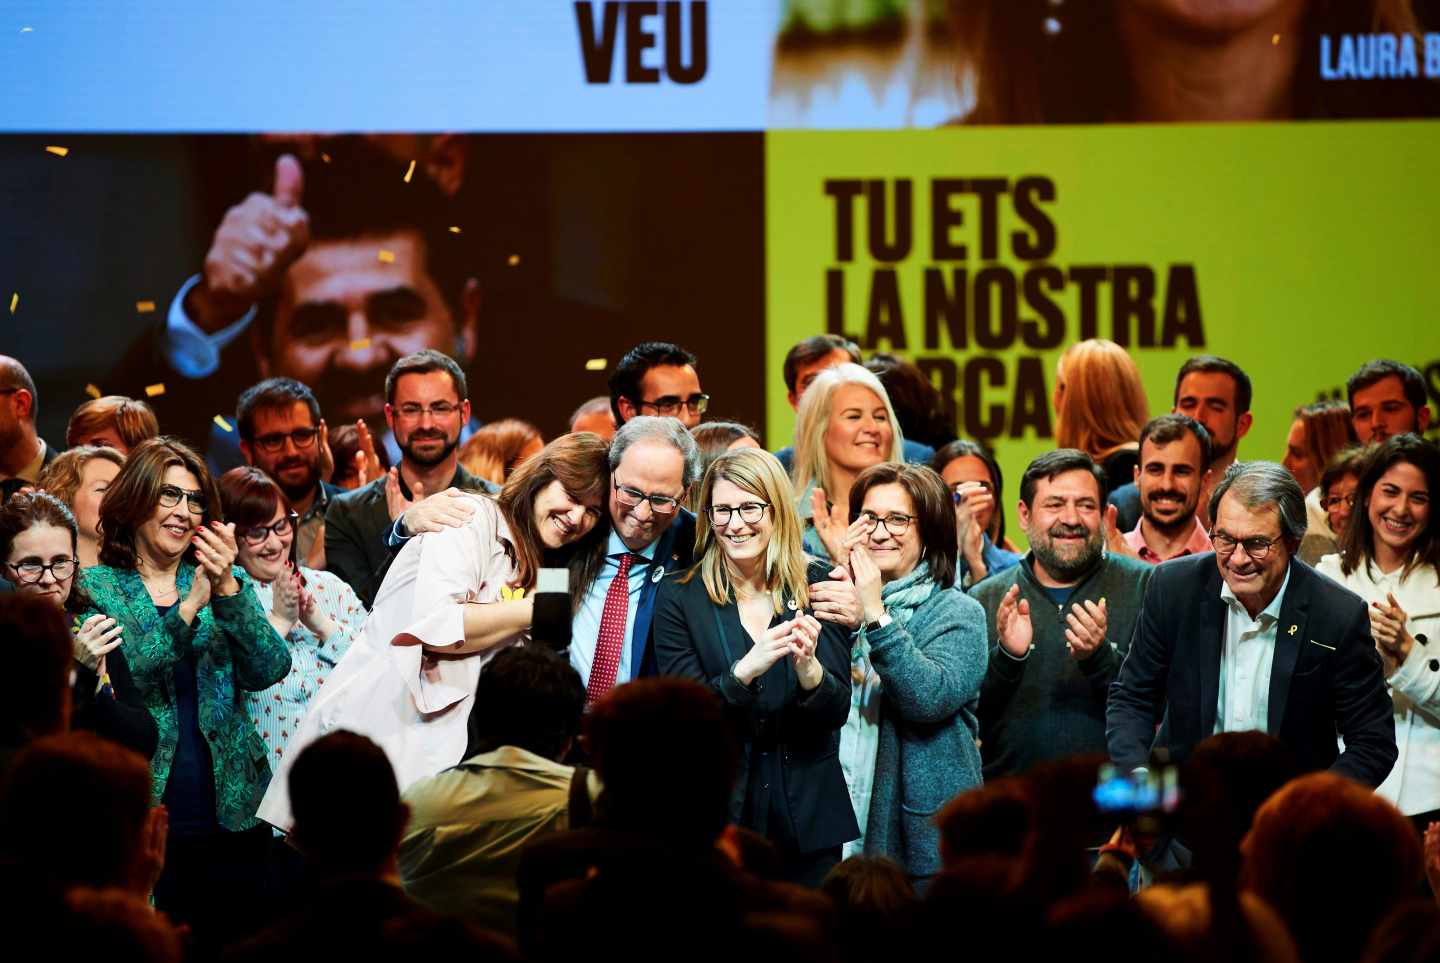 La candidata Laura Borràs, junto a Quim Torra en la apertura de campaña de Junts per Catalunya.